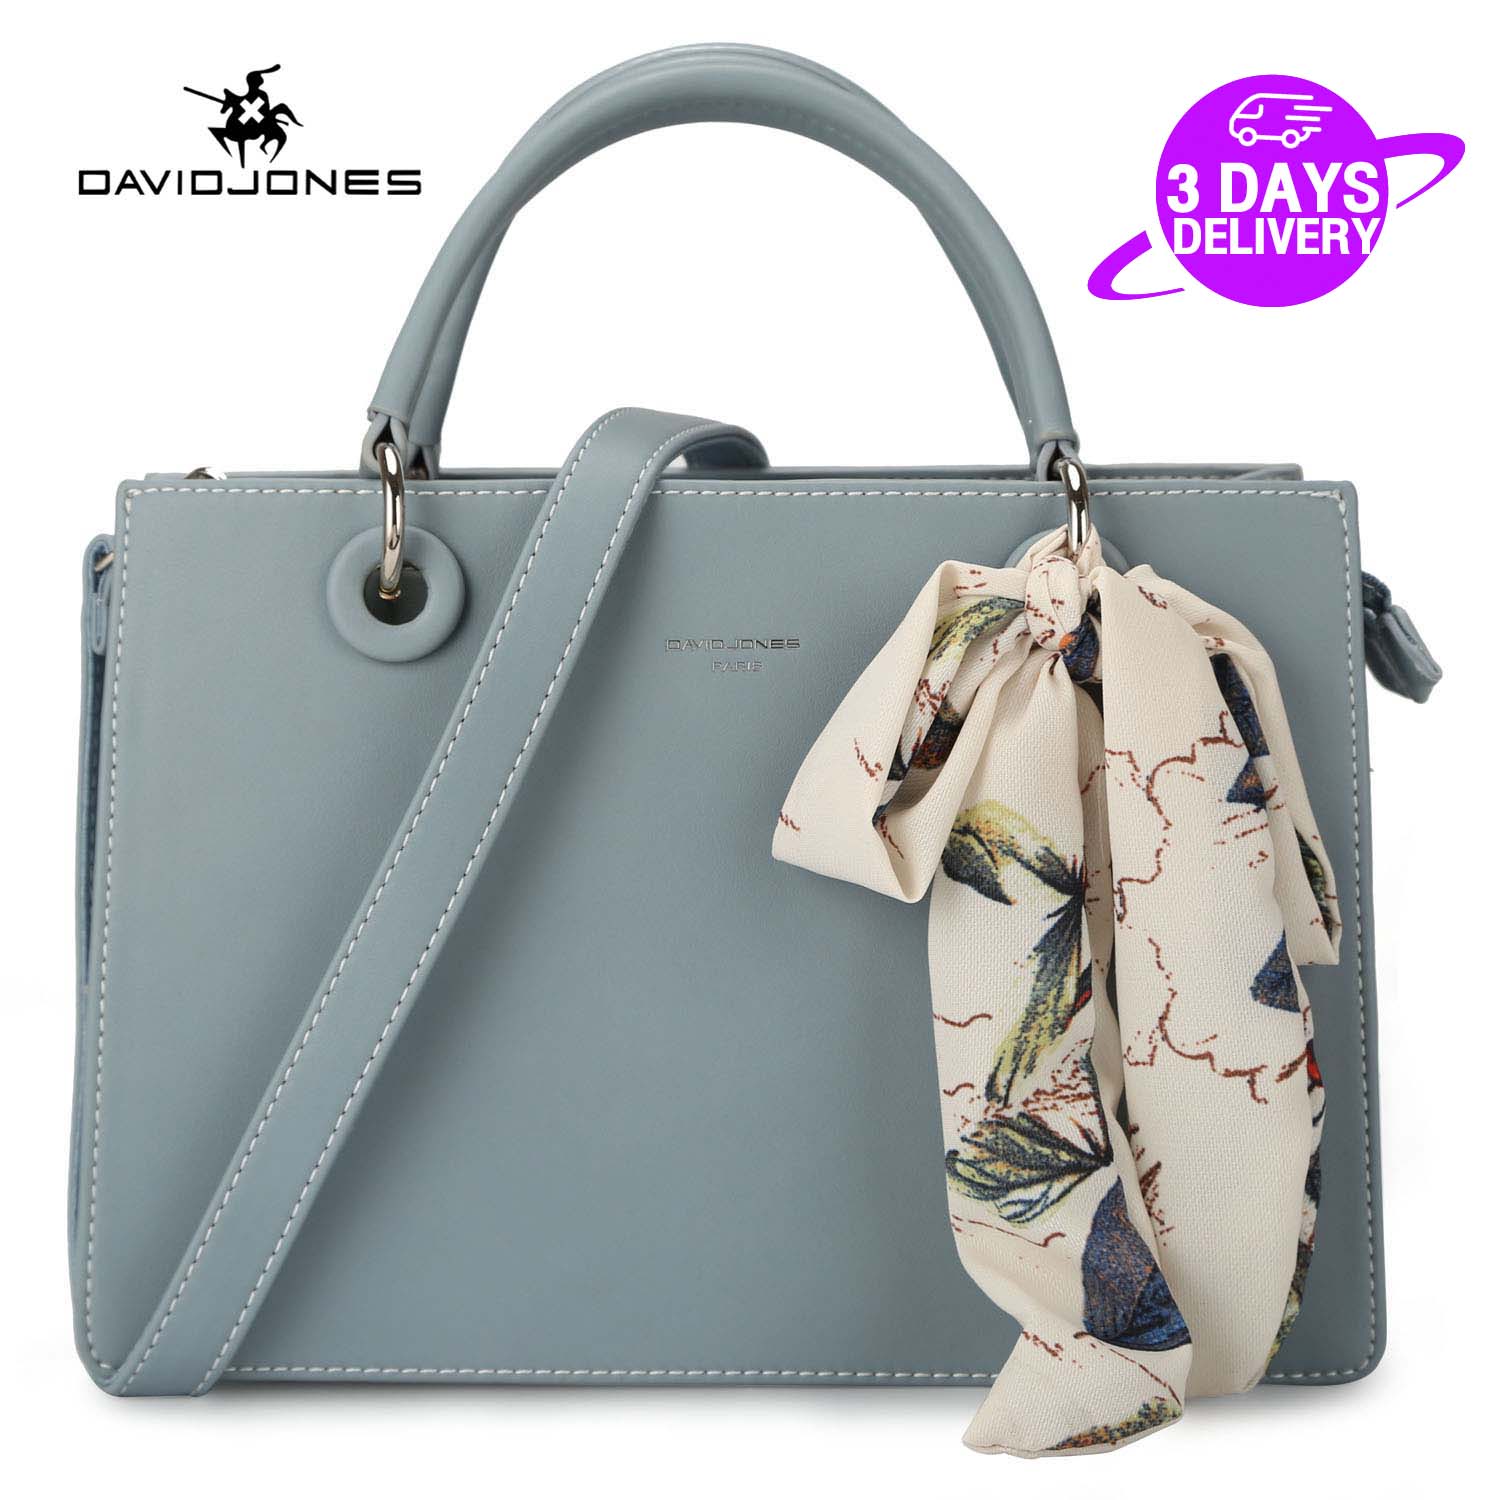 David Jones Paris Ladies Shoulder Bag - Grey 3710